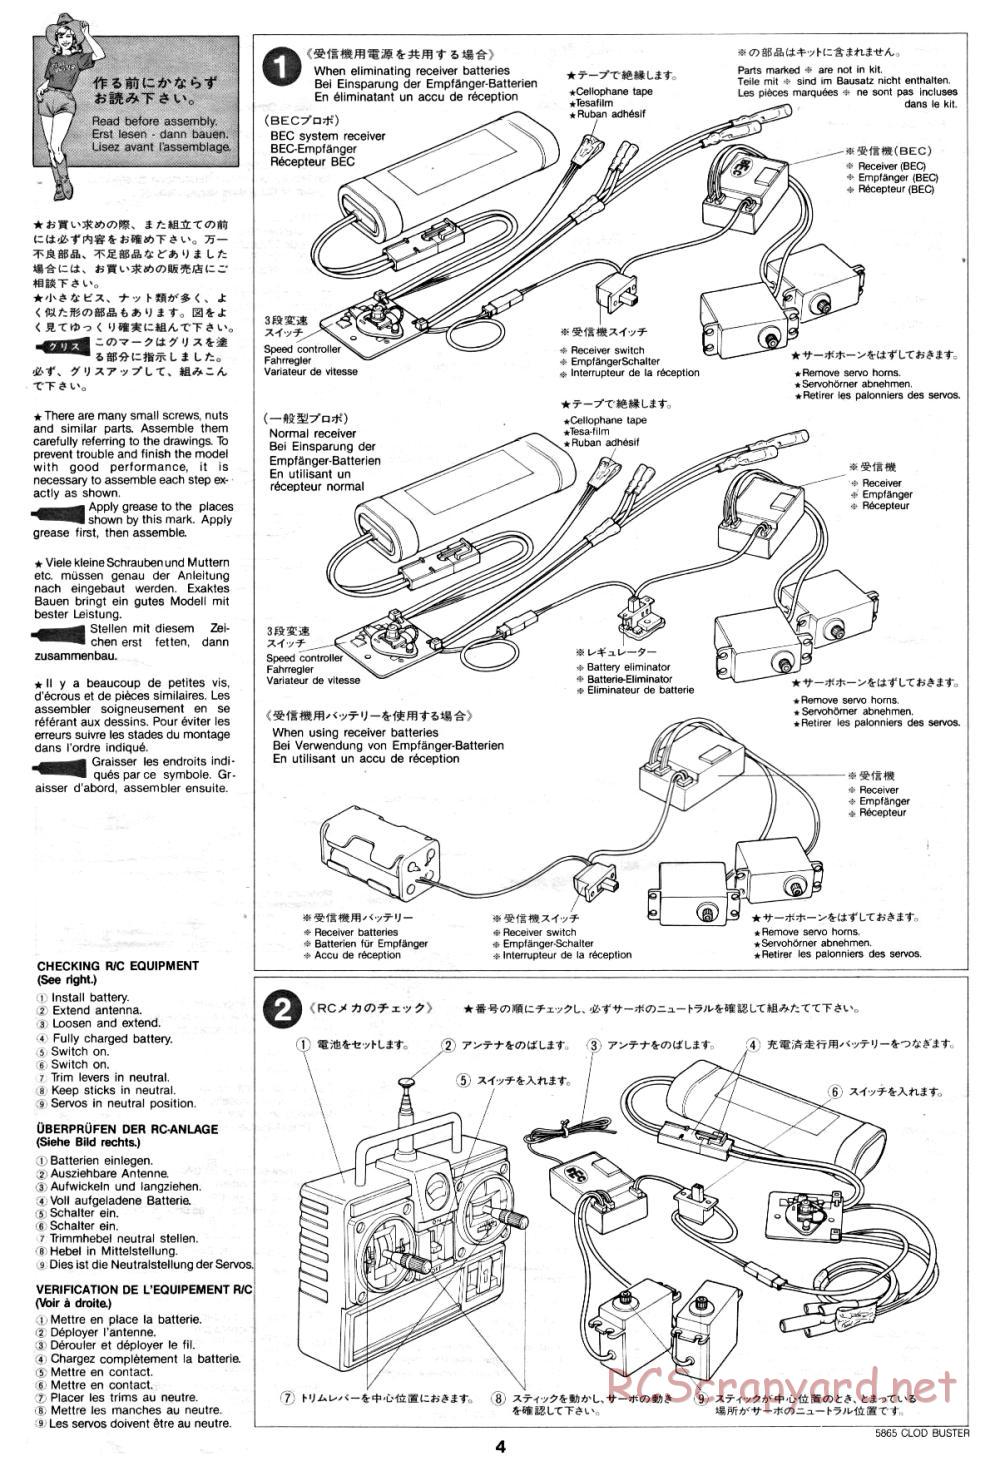 Tamiya - Clod Buster - 58065 - Manual - Page 4